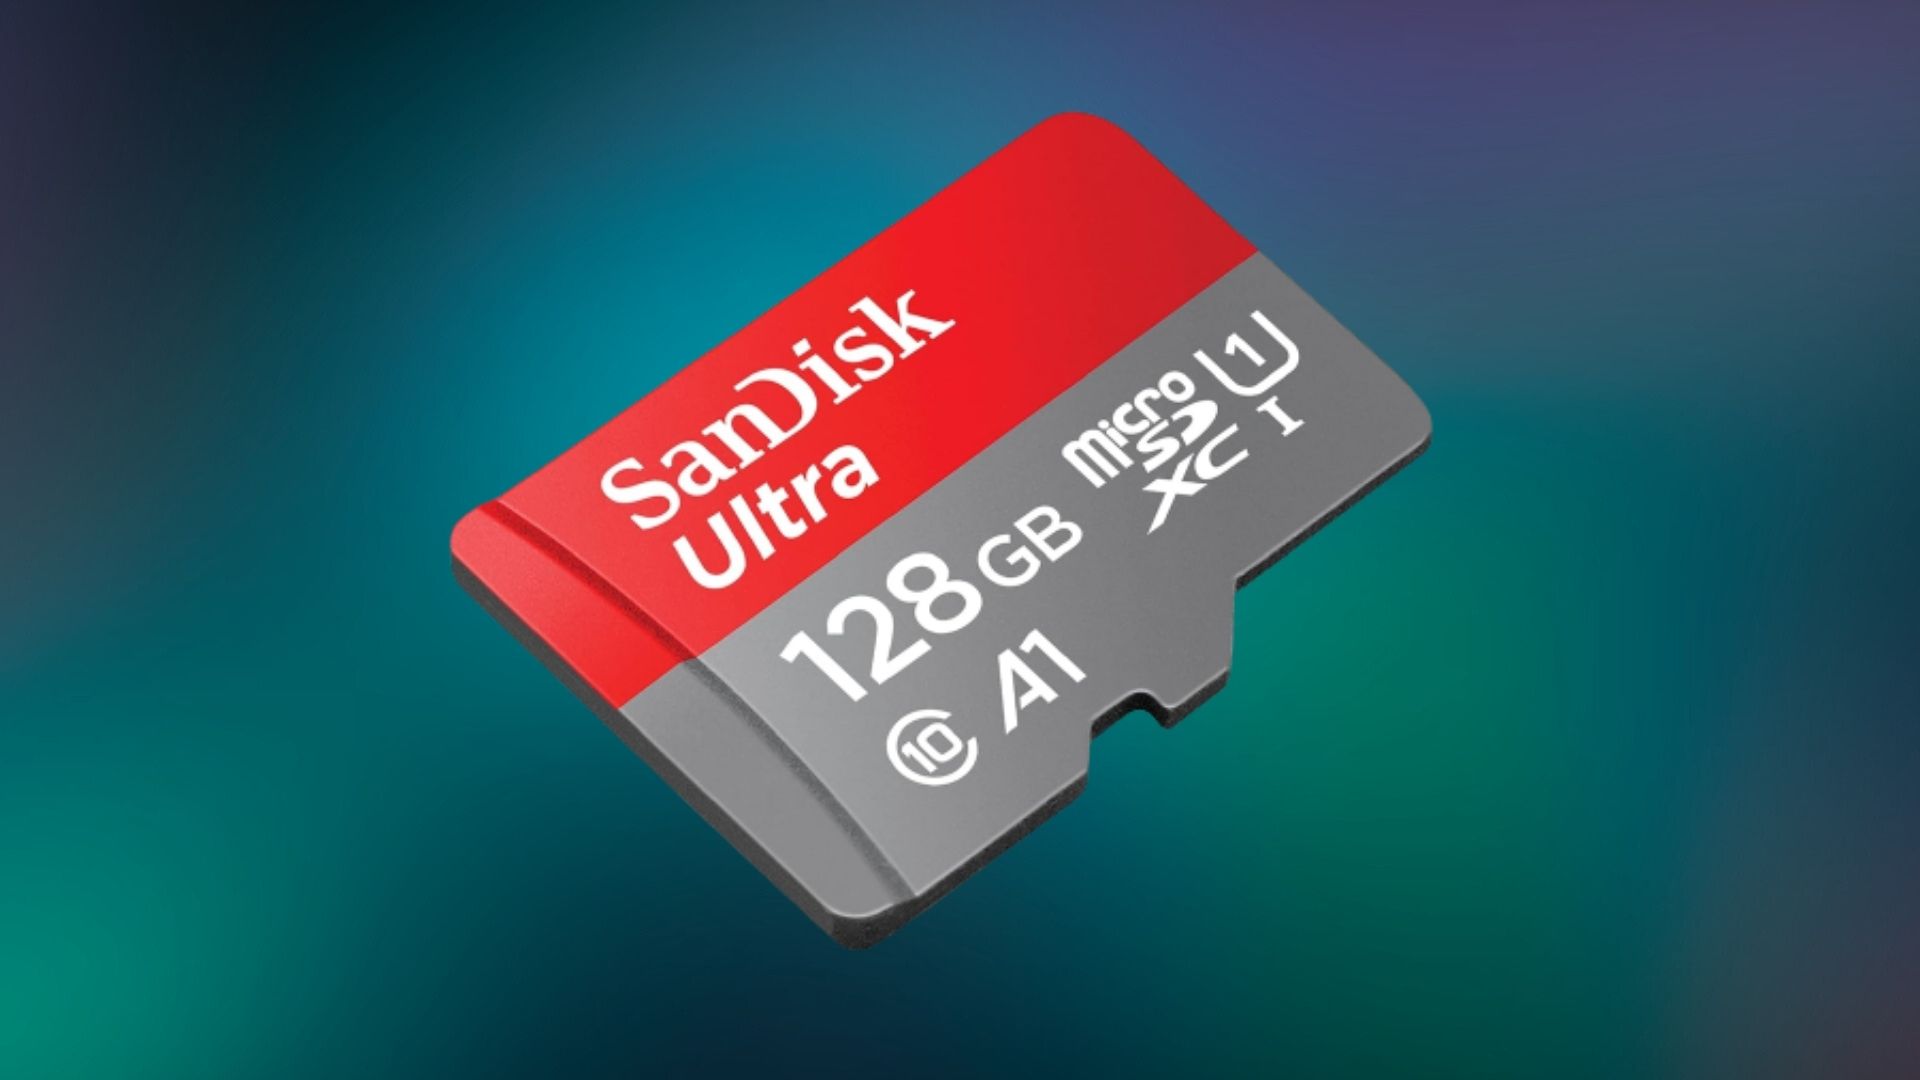 Ça faisait longtemps qu'on avait vu un prix aussi mini pour une microSD 128  Go